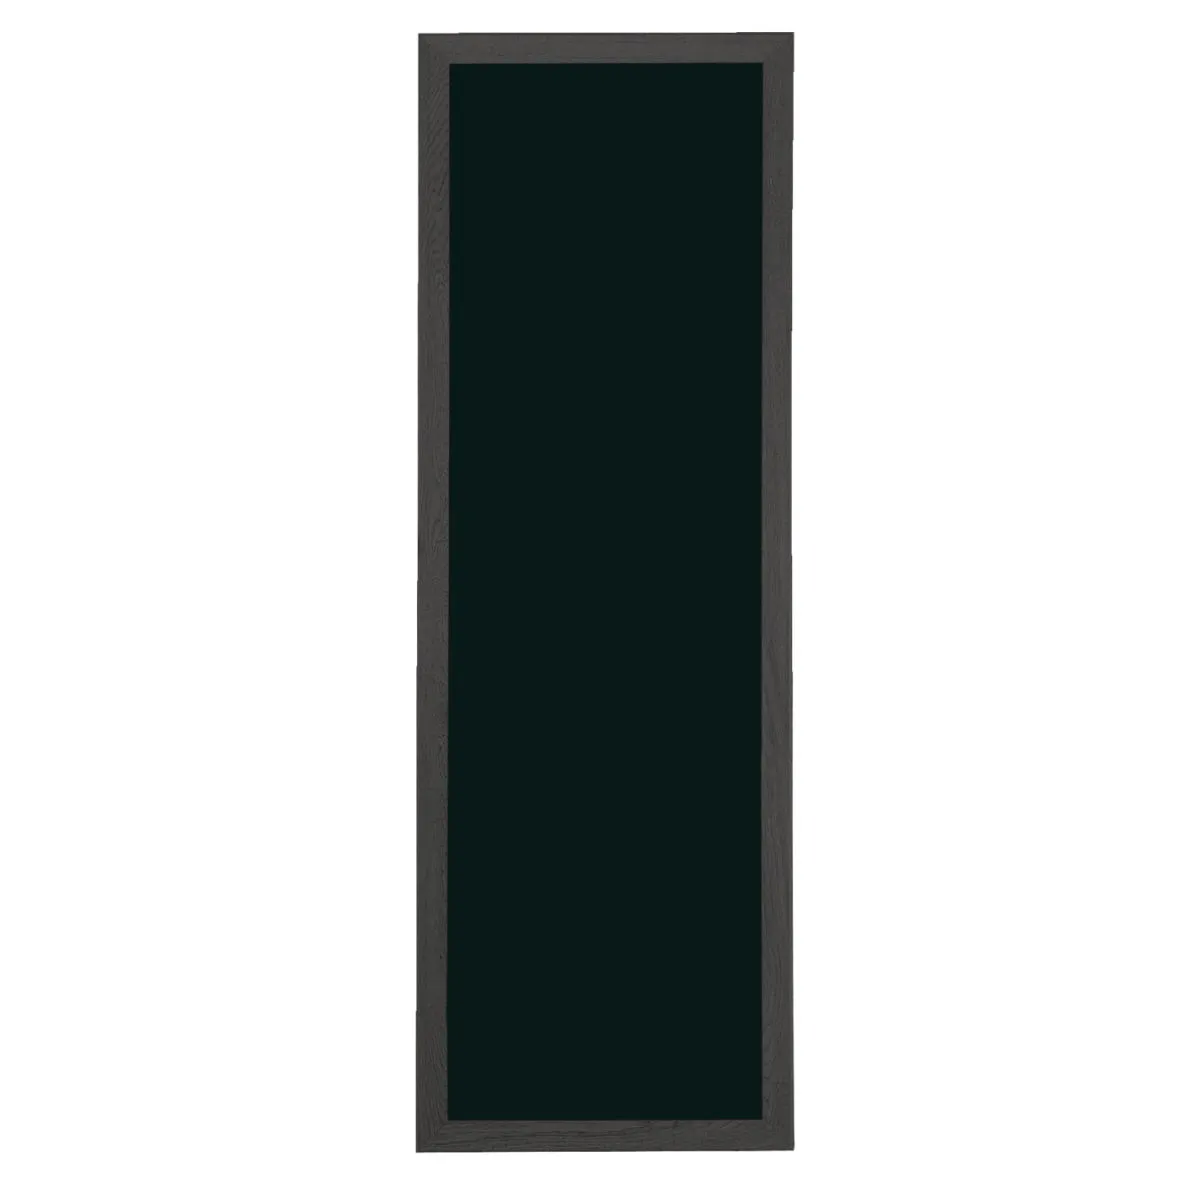 Lavagna Da Vinci 56x170 cm VEGA; 56x170 cm (LxH); nero